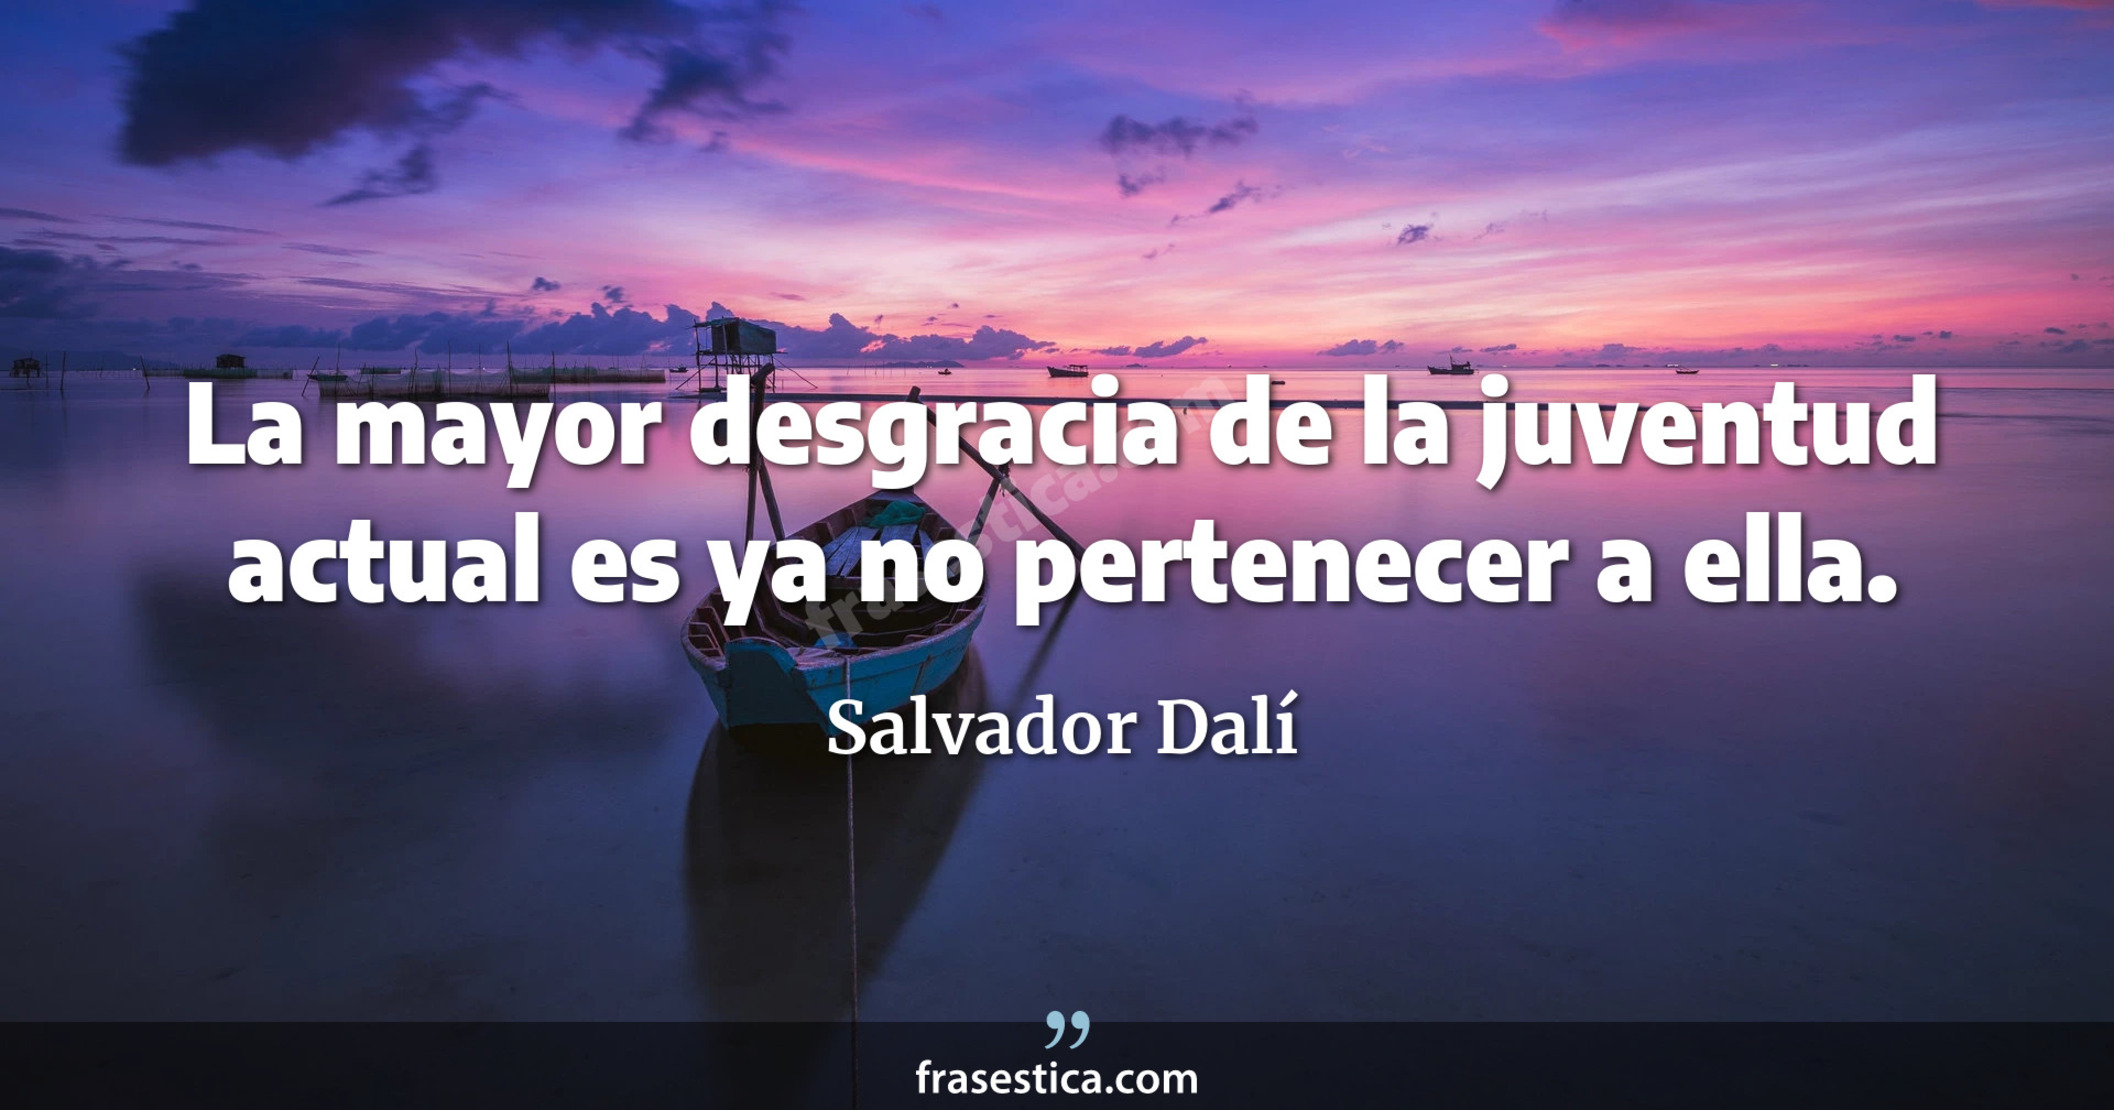 La mayor desgracia de la juventud actual es ya no pertenecer a ella. - Salvador Dalí